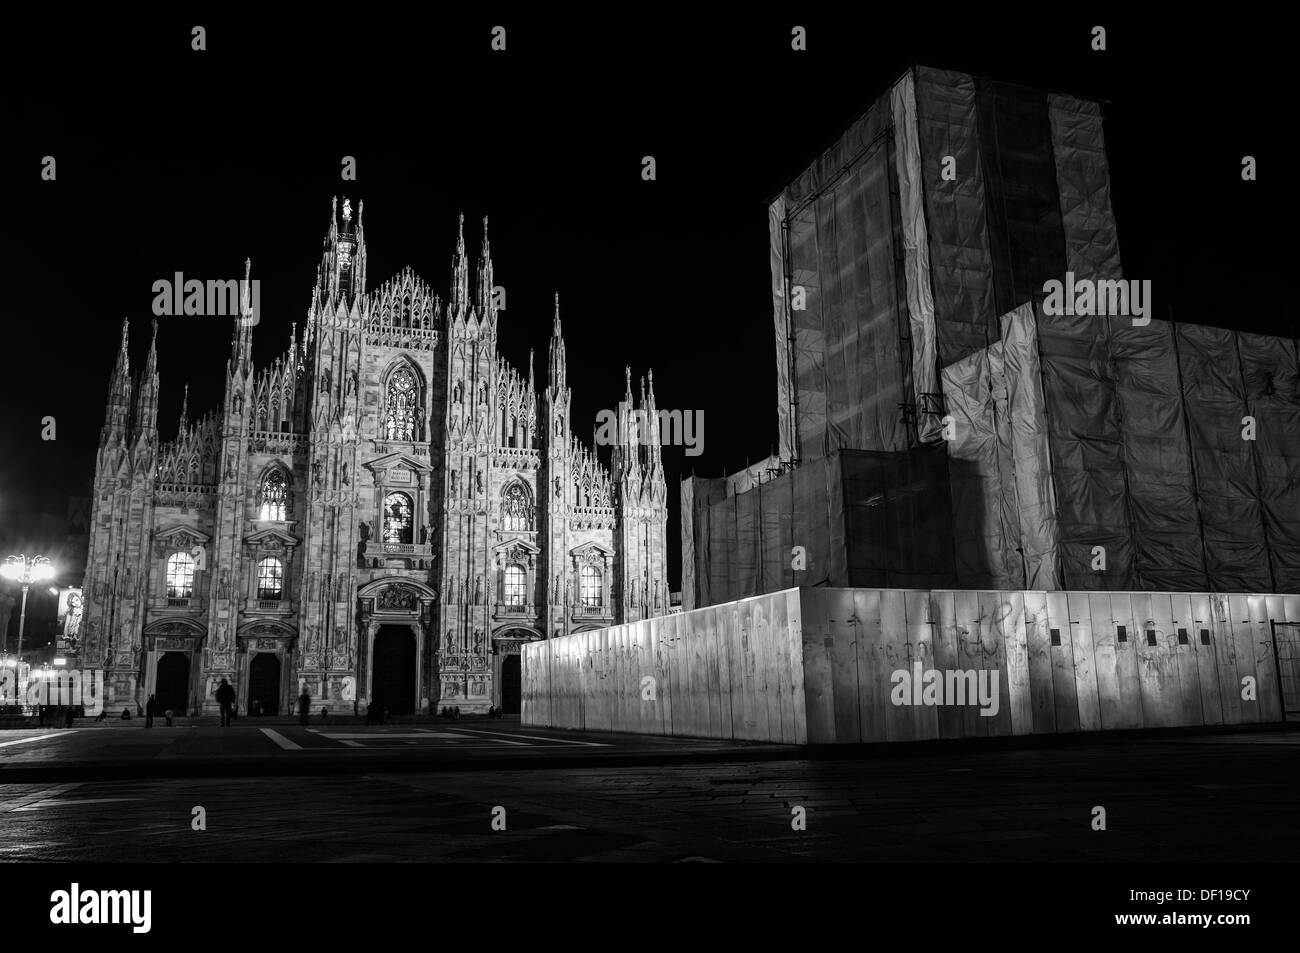 Milan, 2012. Duomo square by night Stock Photo